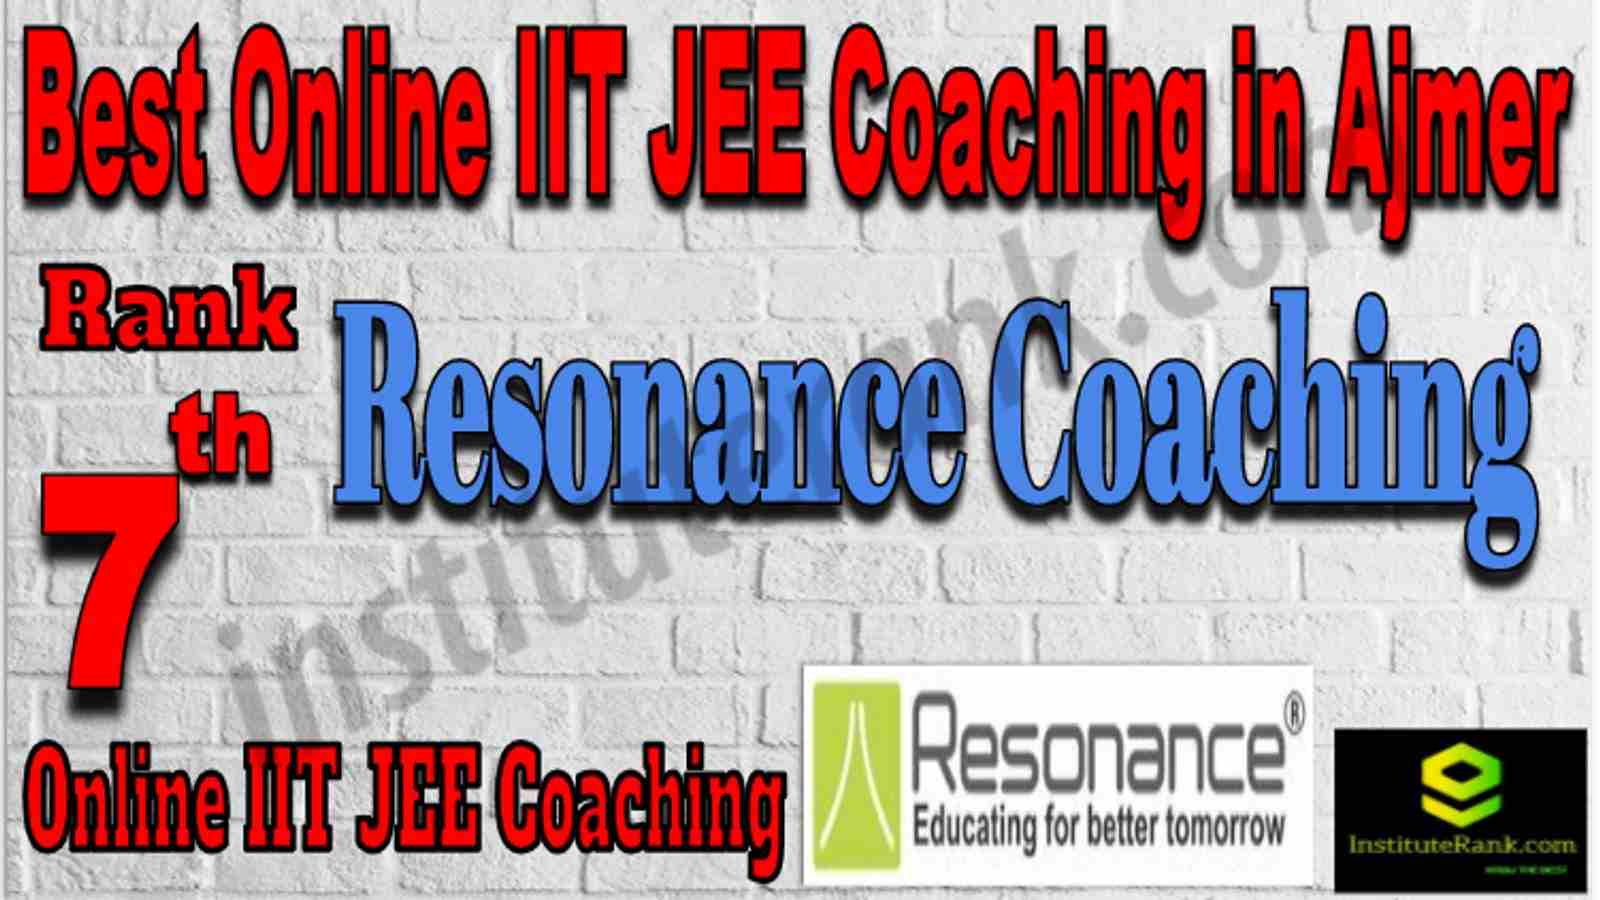 Rank 7 Best Online IIT JEE Coaching in Ajmer